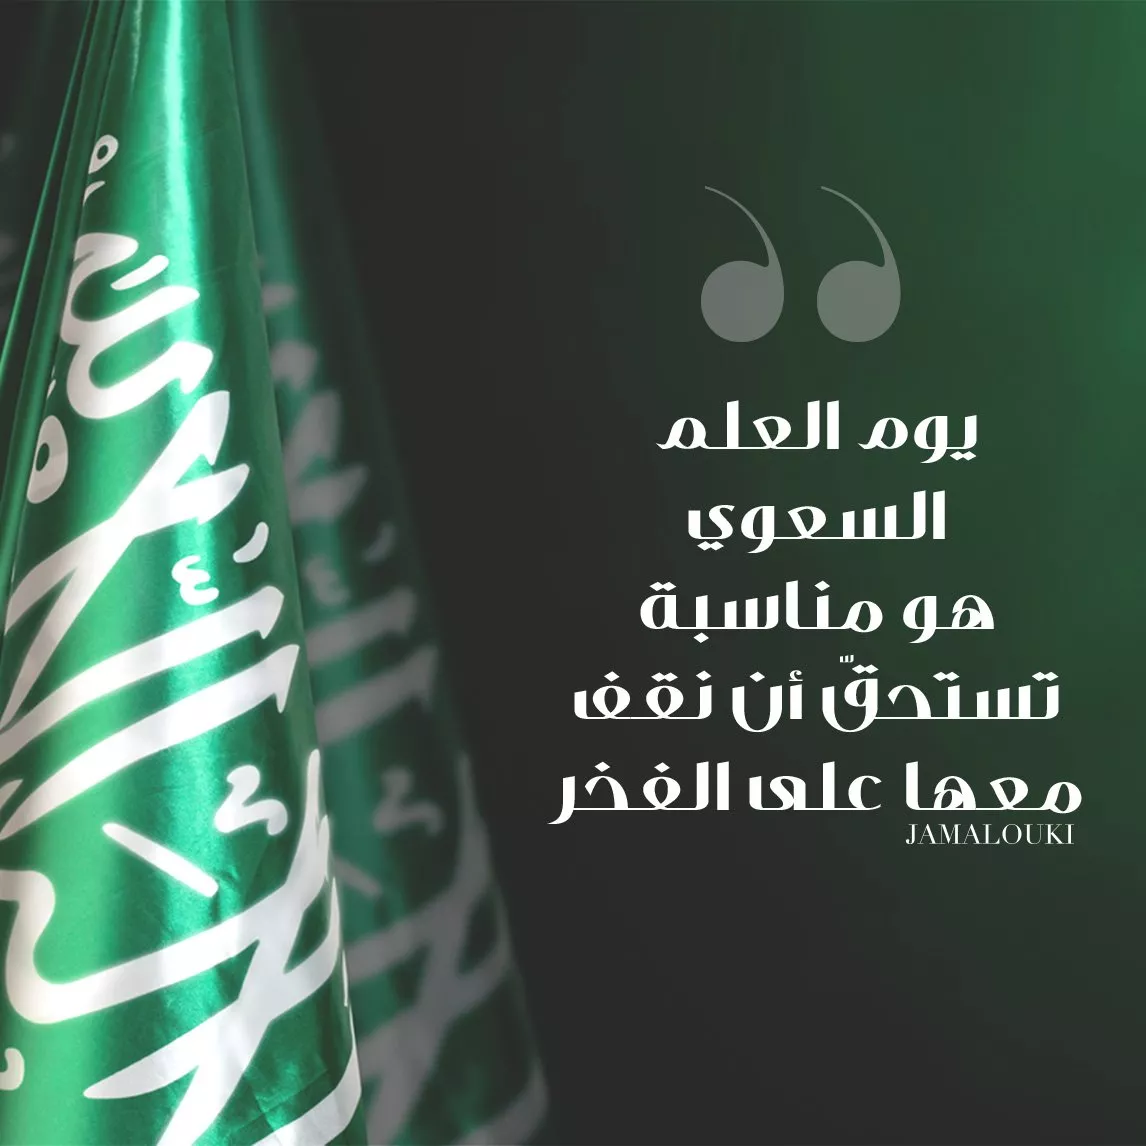 عبارات عن يوم العلم السعودي لترسليها إلى المقرّبين منكِ